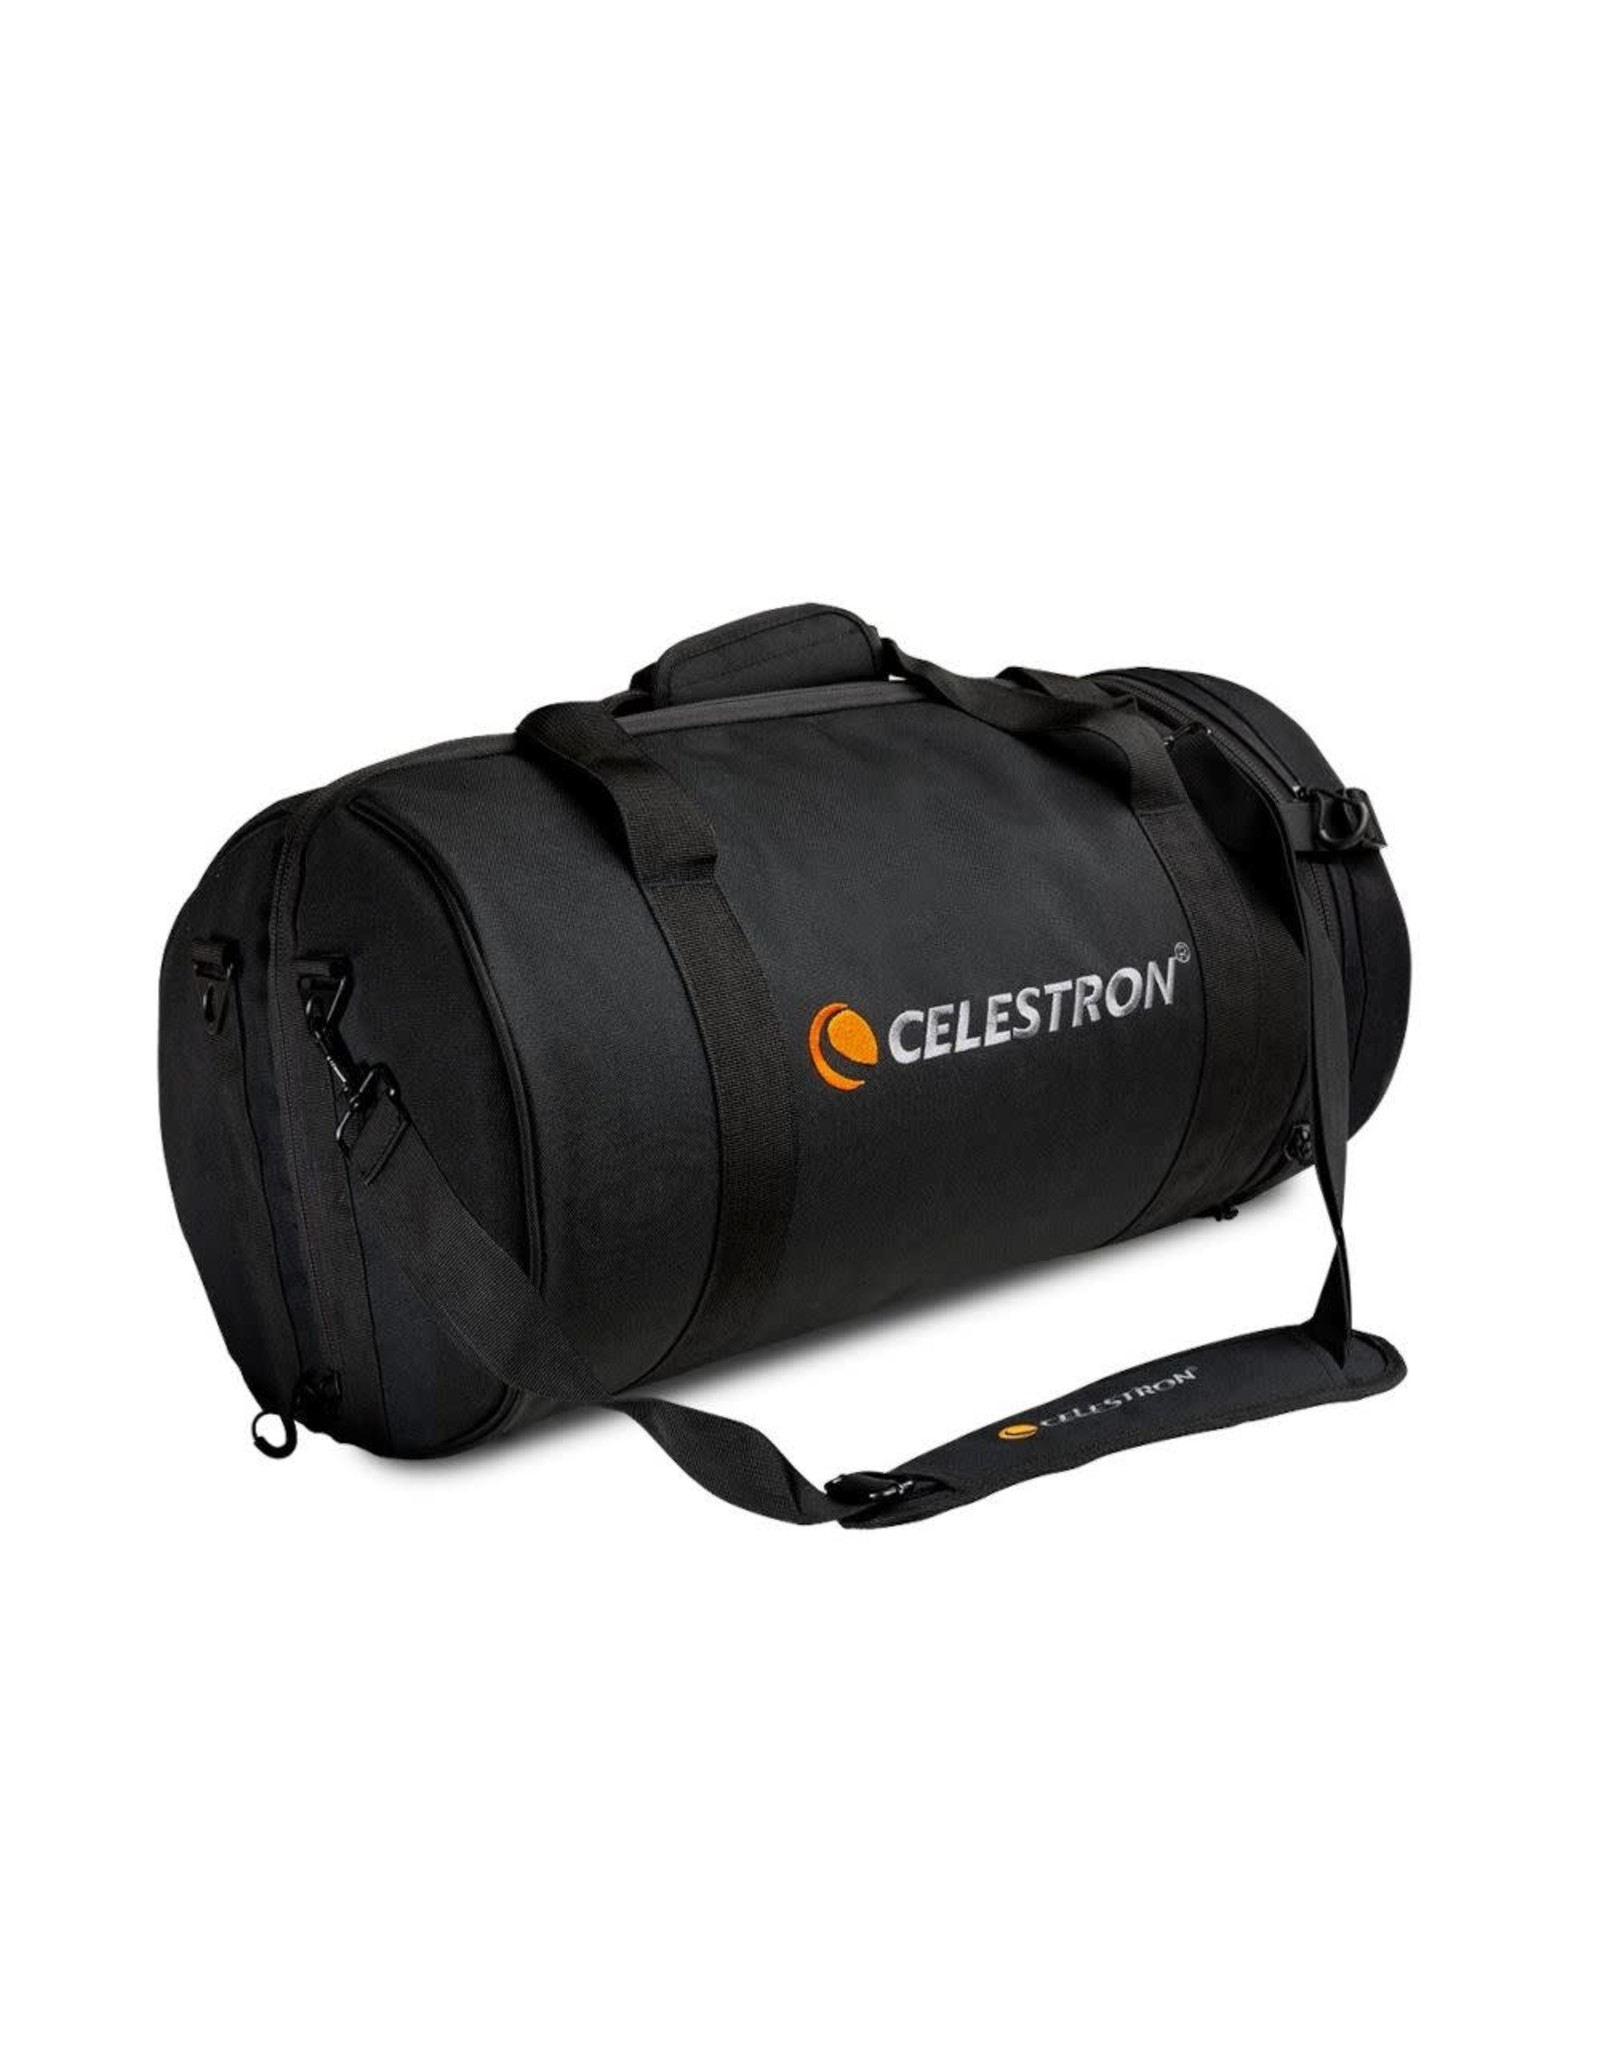 Celestron Celestron Padded Telescope Bag for 8" optical tube